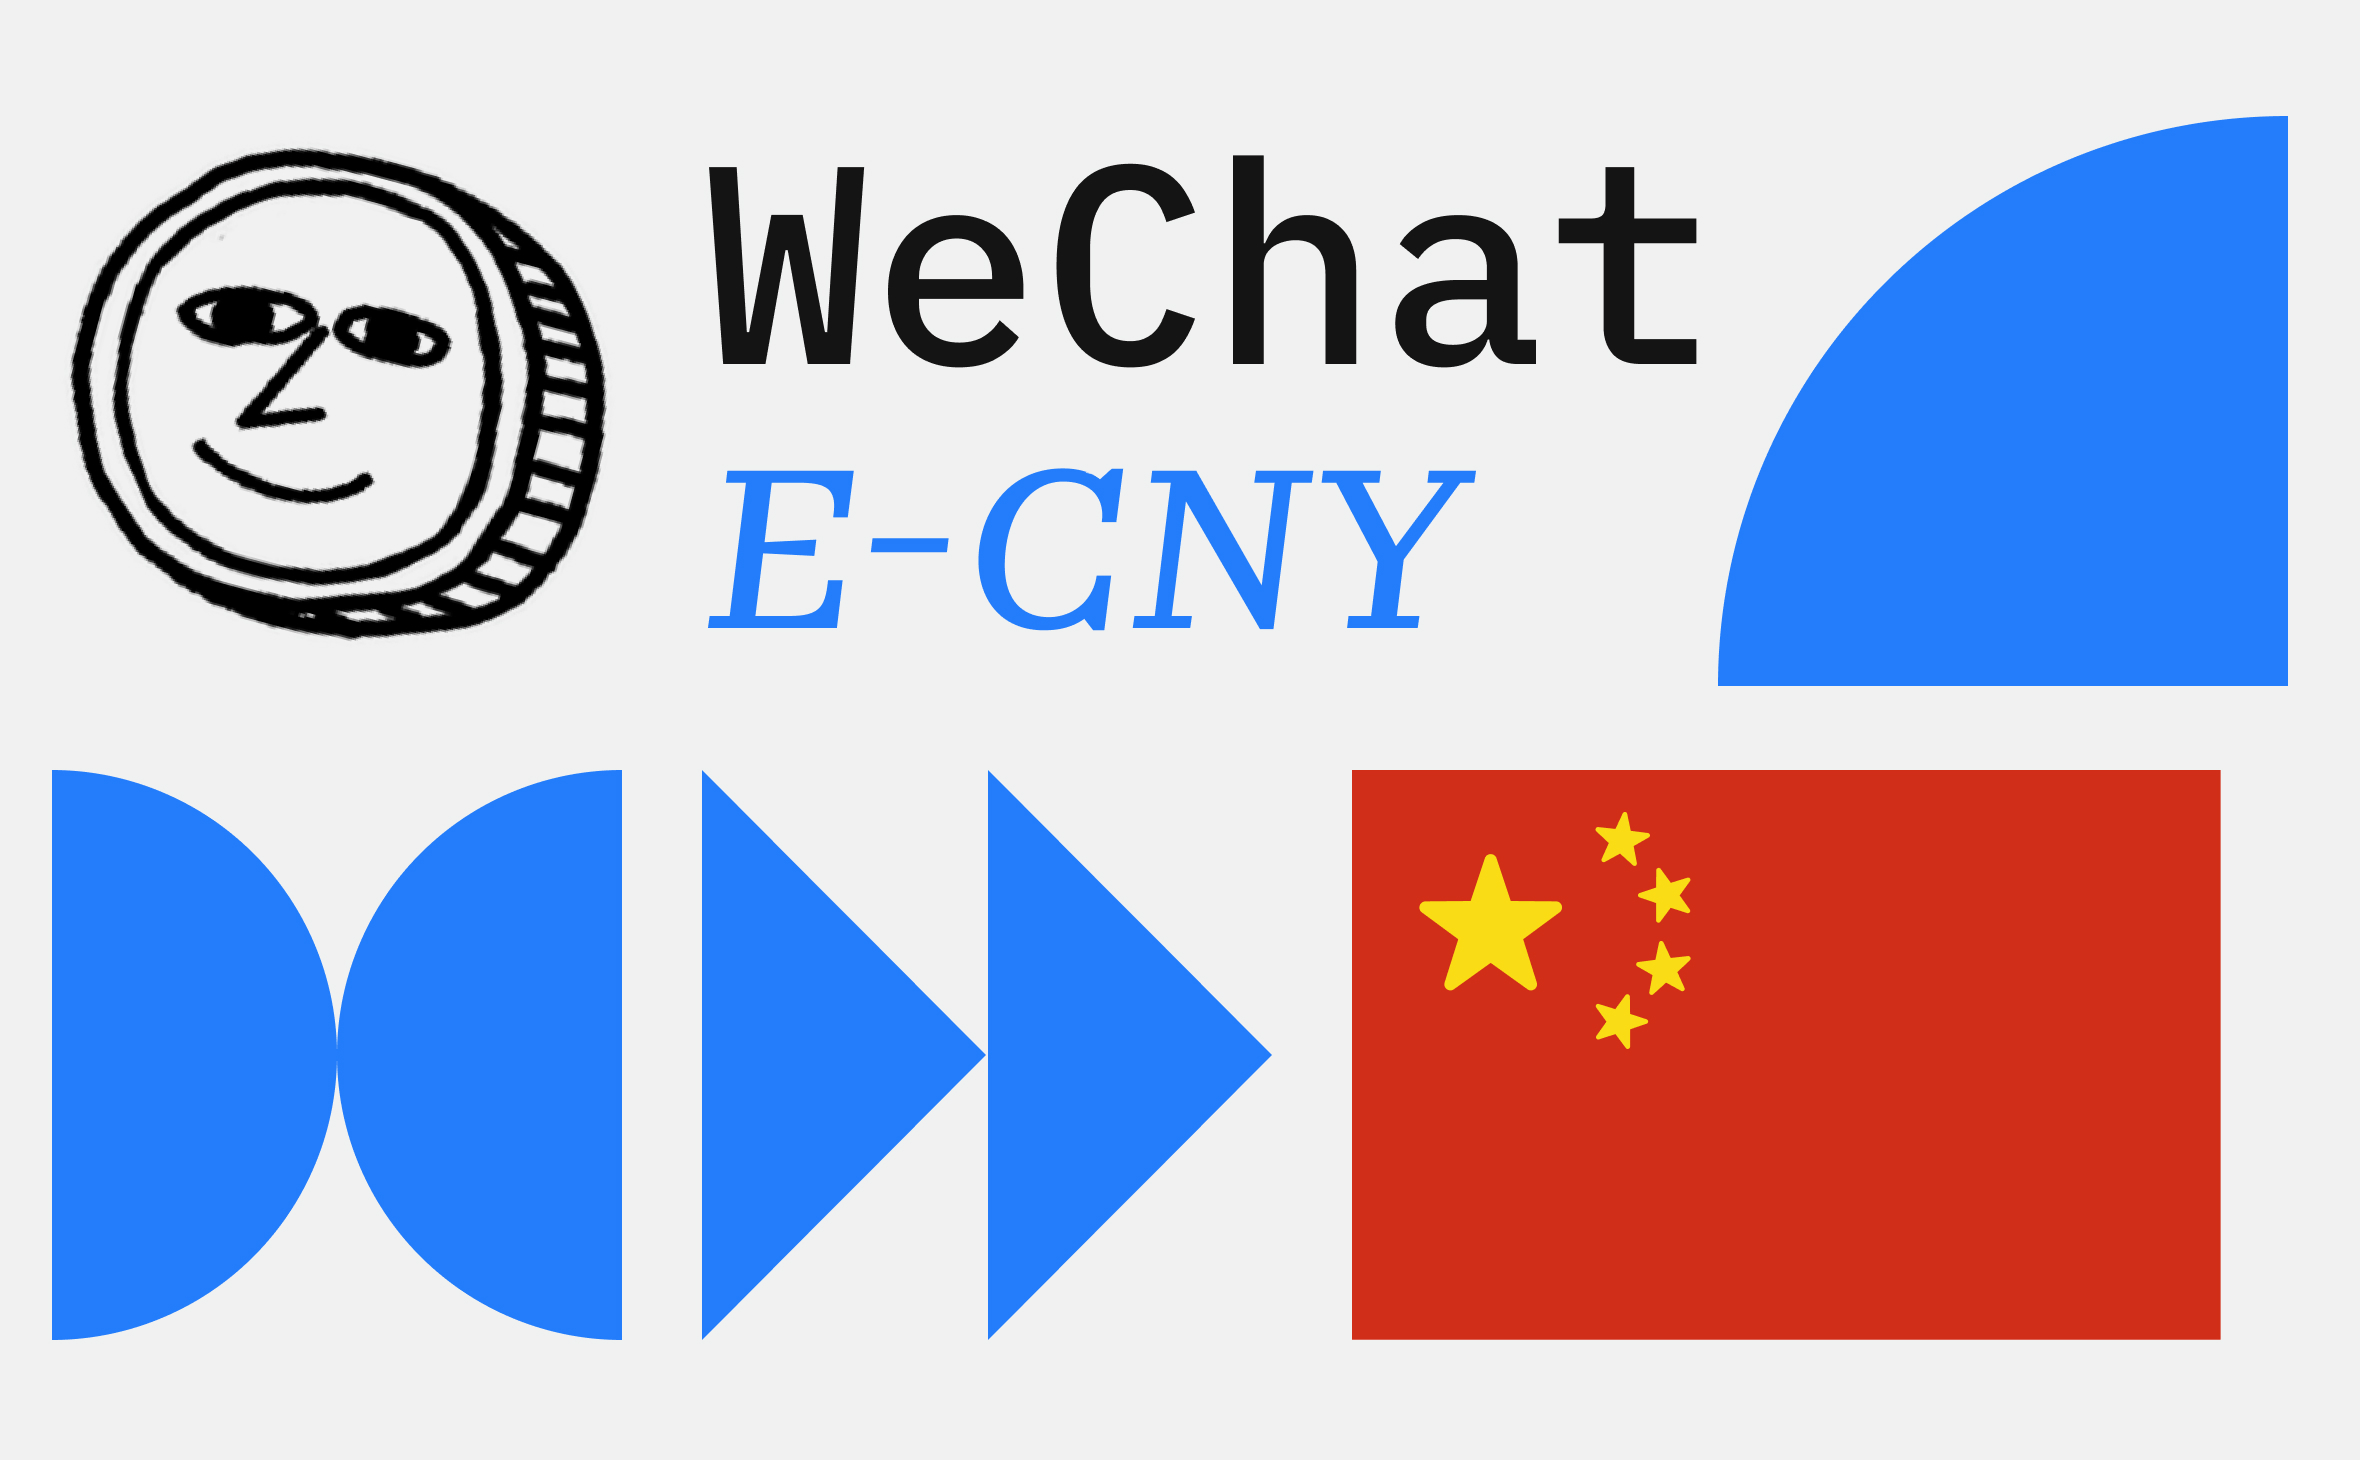 В WeChat добавили поддержку цифрового юаня